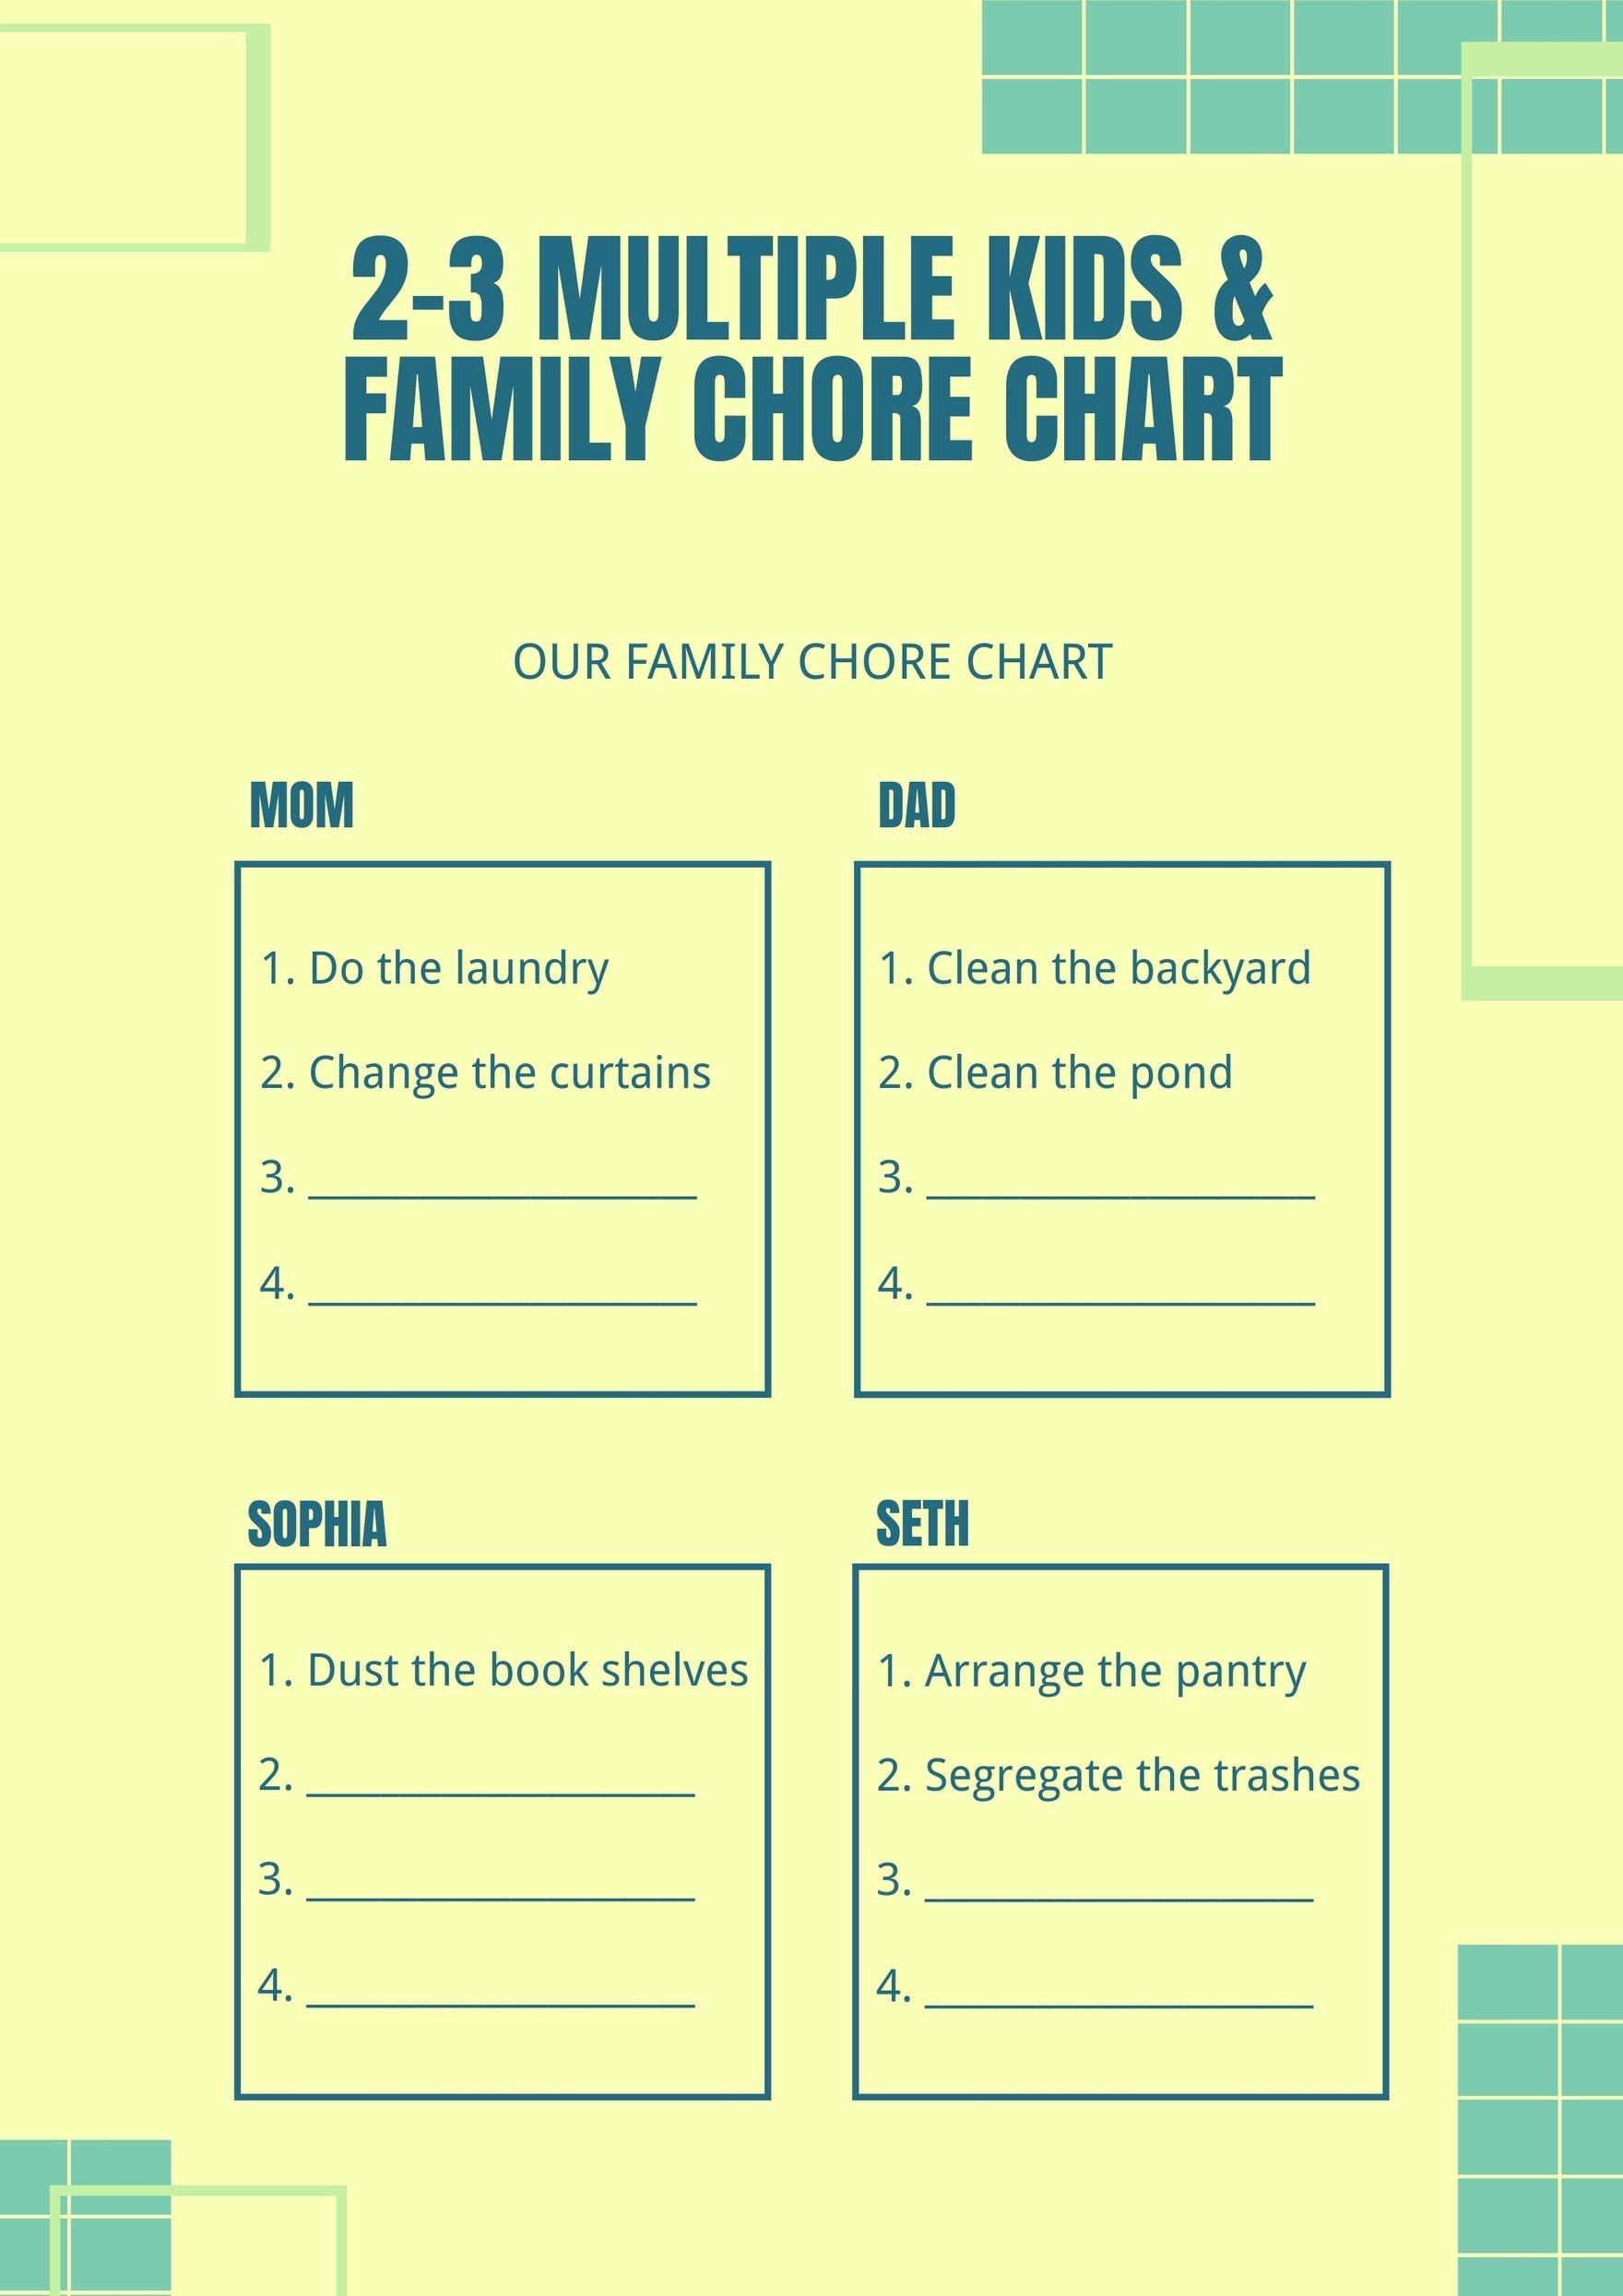 2-3 Multiple Kids & Family Chore Chart